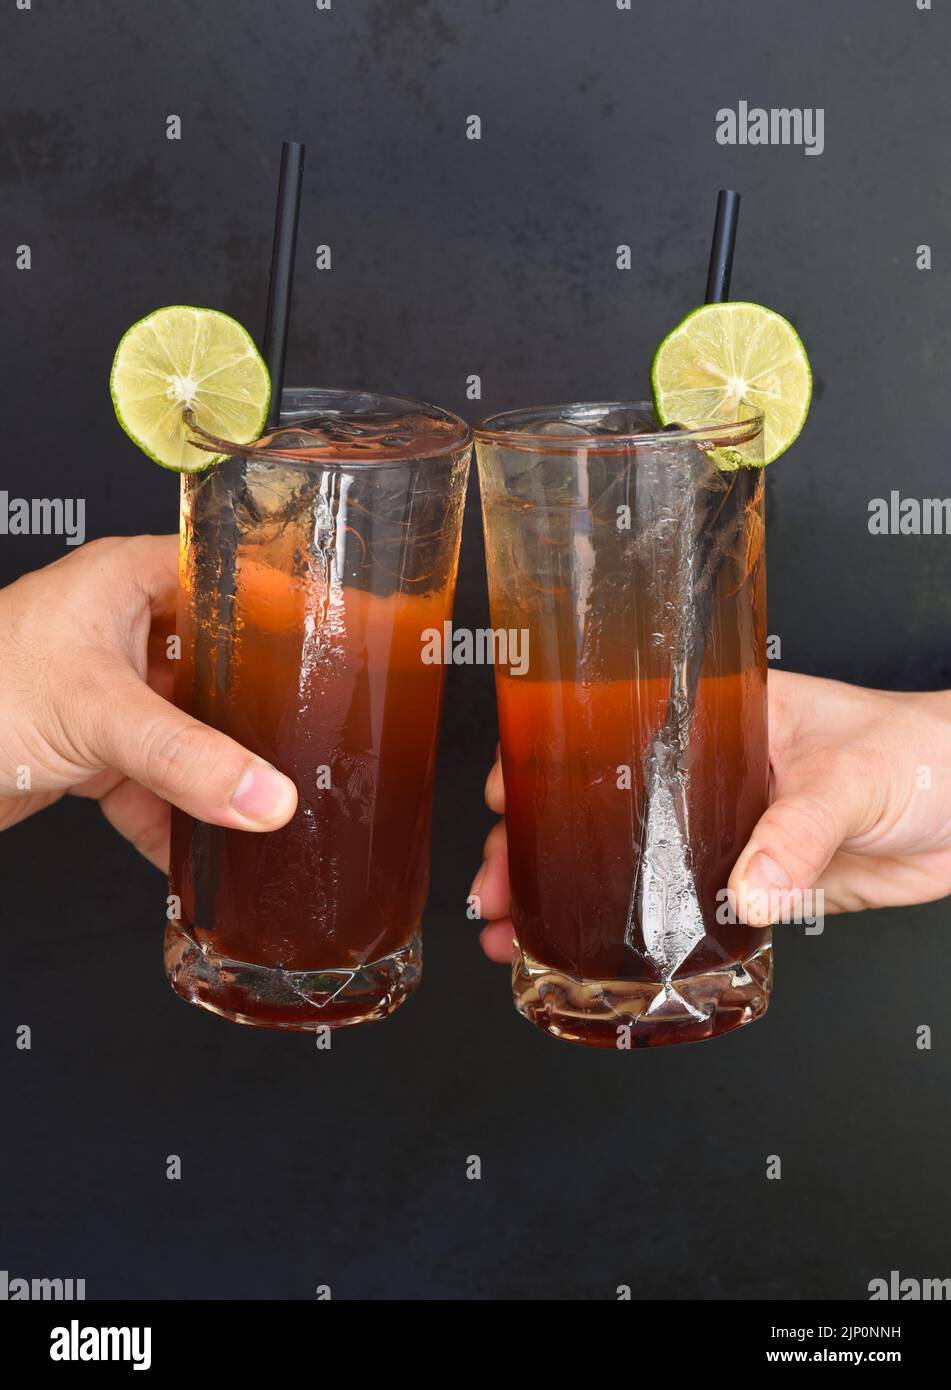 Hände klirrende Gläser mit Pflaumenwein Cocktails auf schwarzem Hintergrund Stockfoto